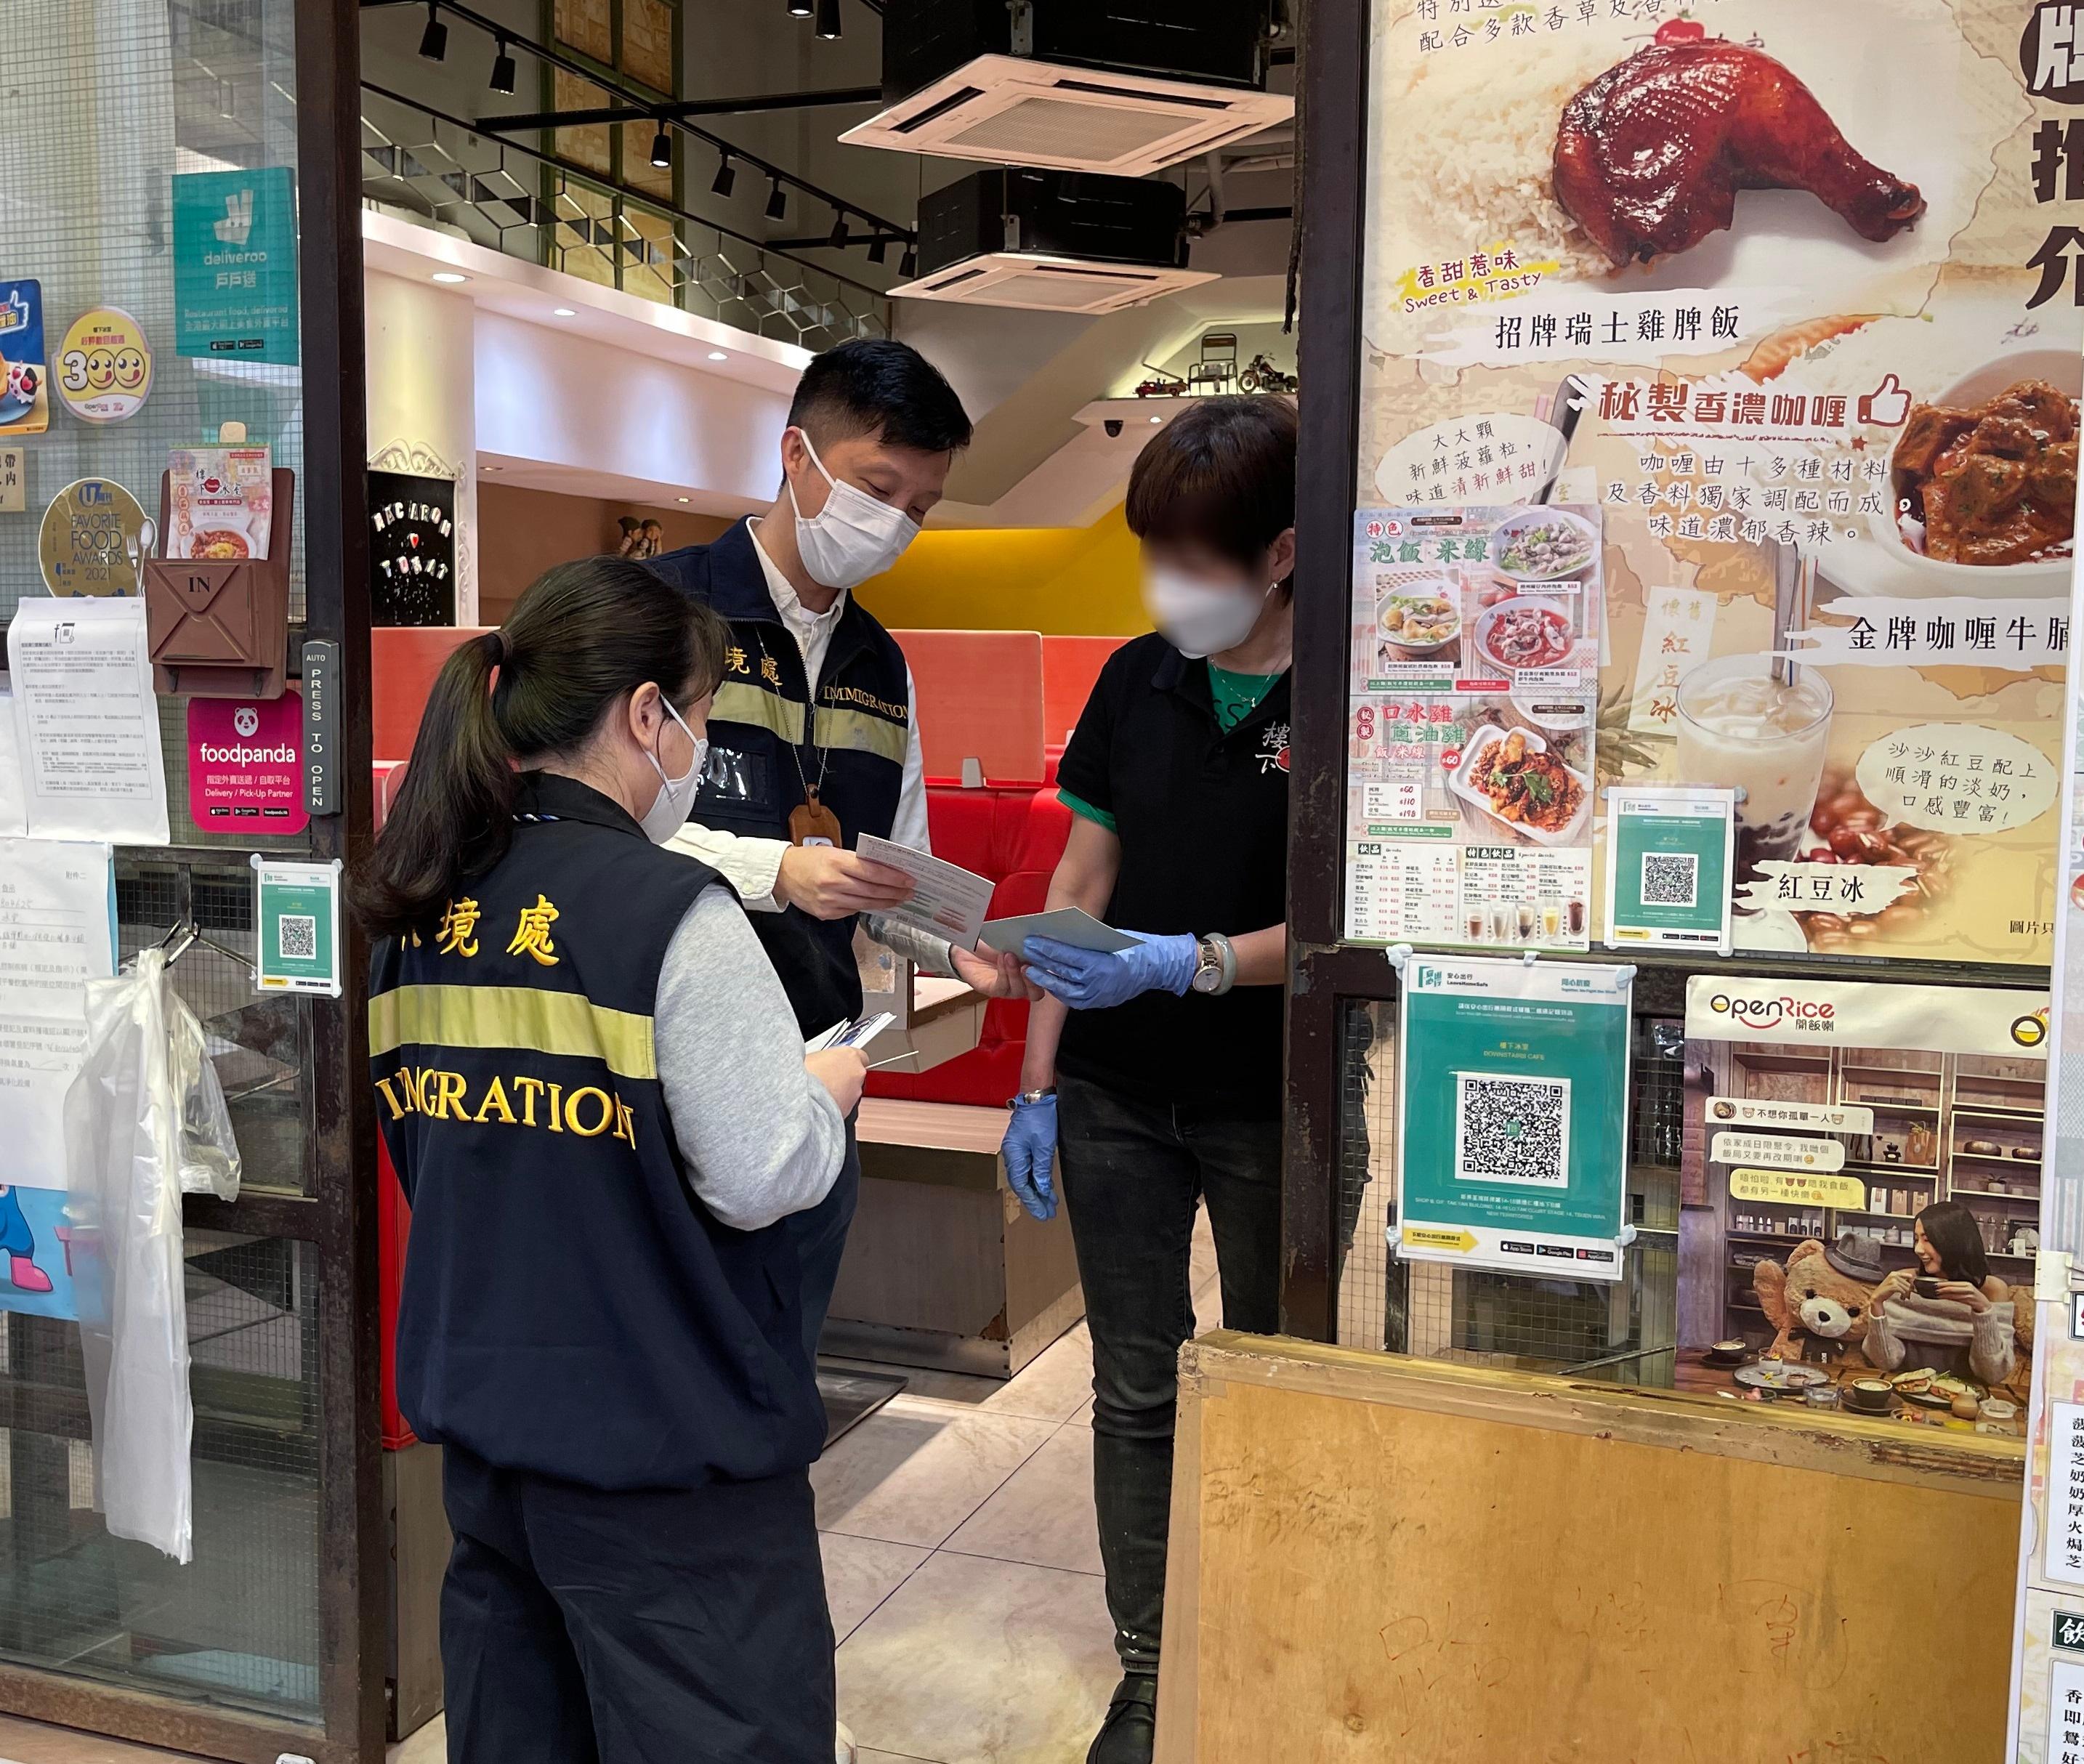 入境处事务处人员向食肆职员派发「切勿聘用非法劳工」的宣传单张。